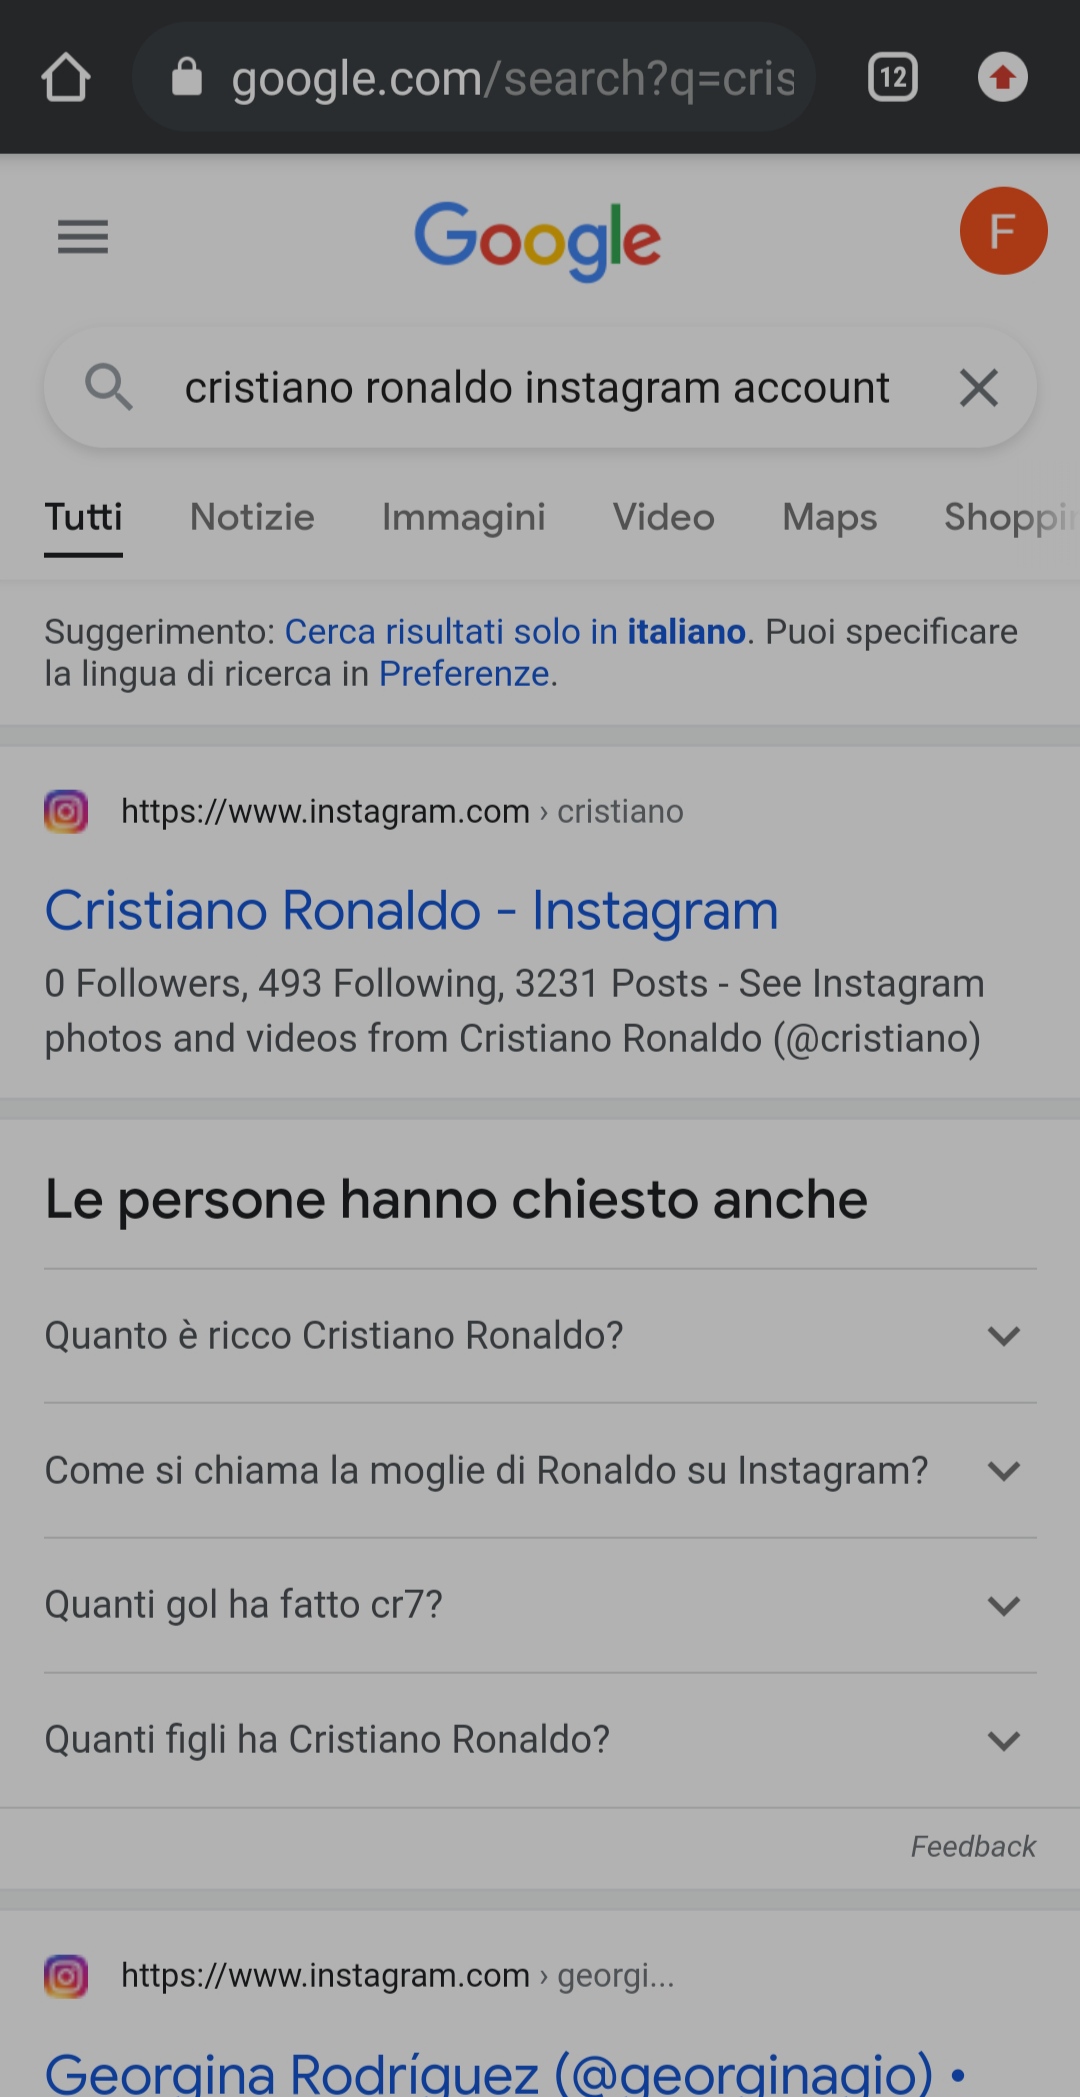 Guardare i contenuti di Instagram senza iscriversi e avere un profilo